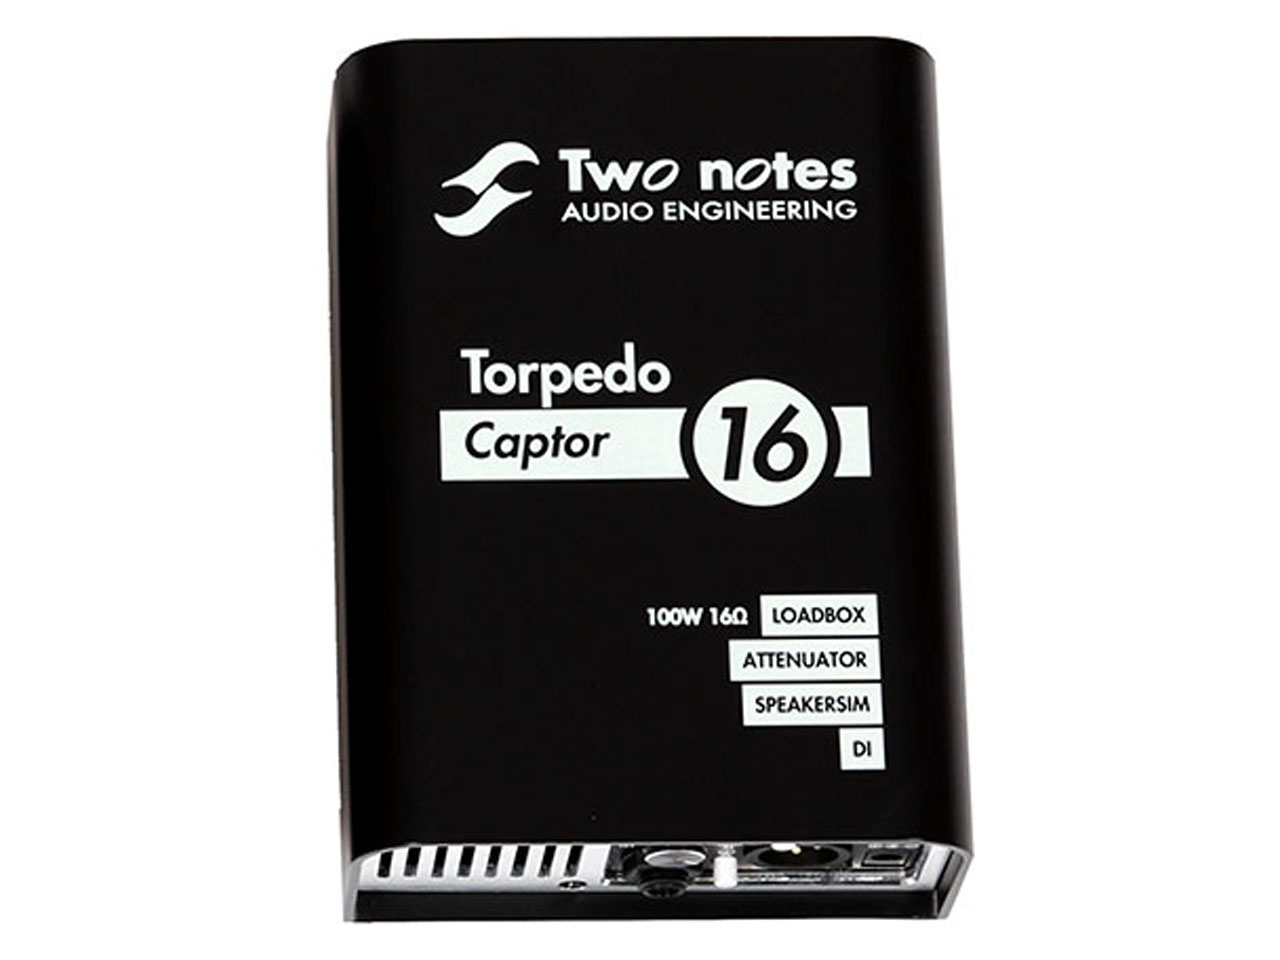 Two notes Torpedo Captor【16オーム】<br>(ロードボックス/アッテネーター)(トゥーノーツ) 駅前店